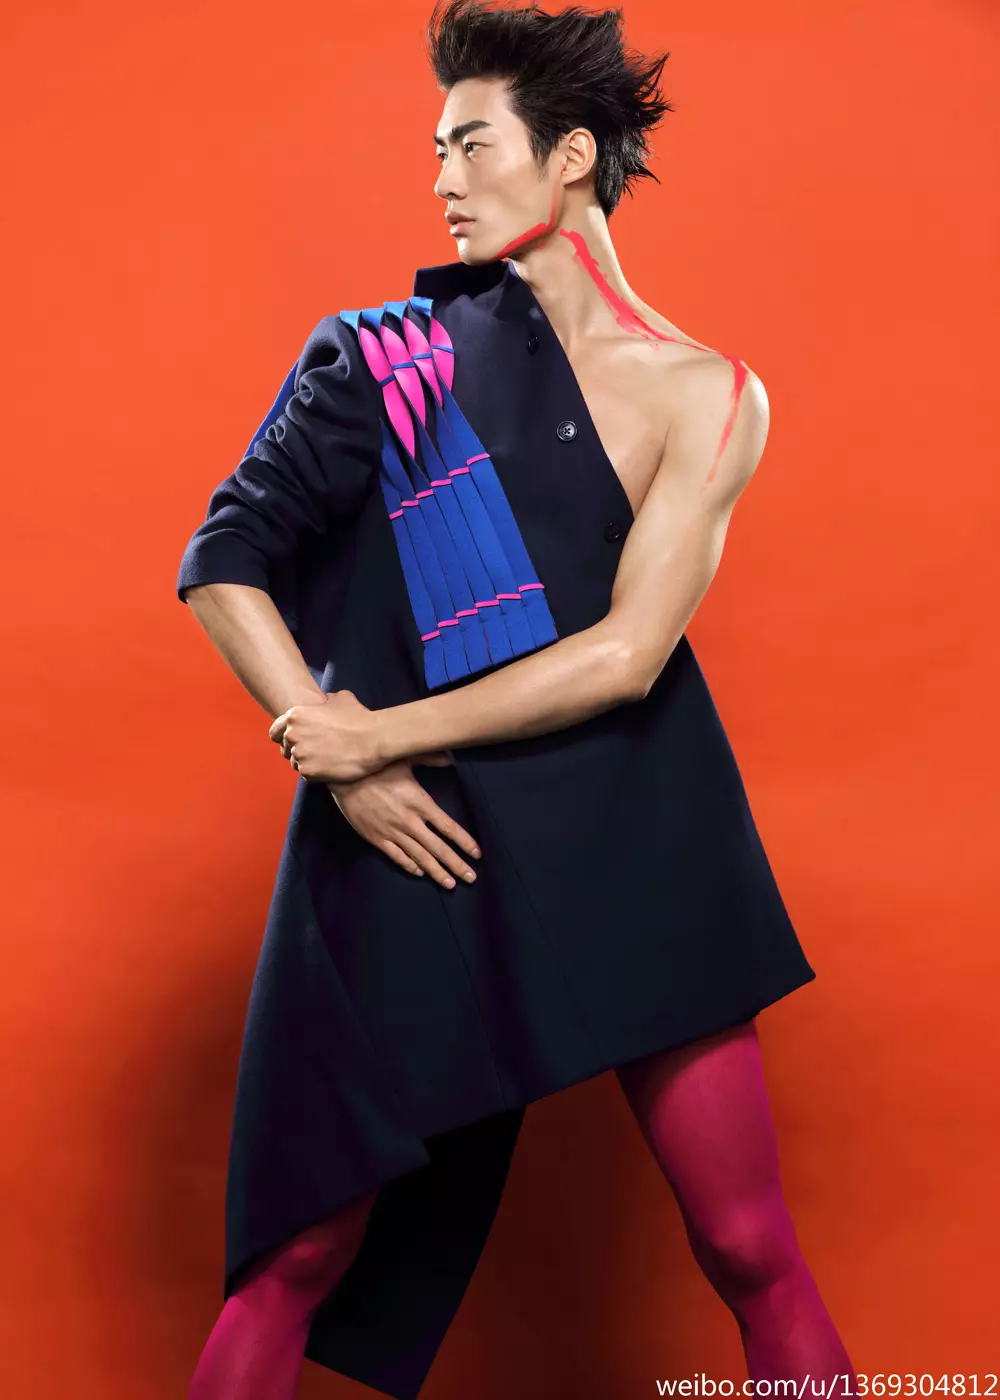 Kom ons ontdek die perfek gedaante model Ni Hao wat deur Zhào Hoo Yuān in modieuse kledingstukke geskiet is.